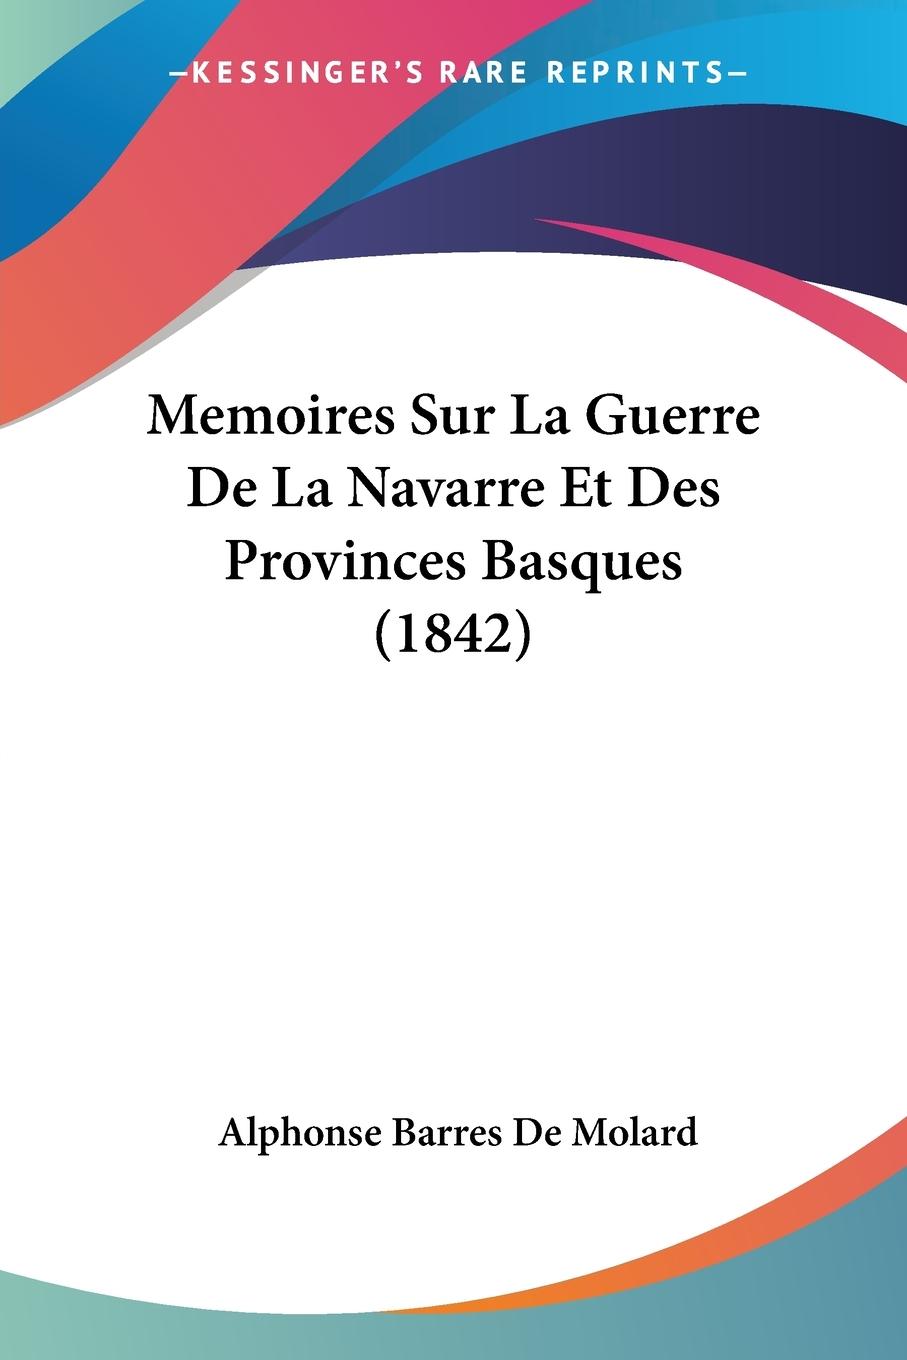 Memoires Sur La Guerre De La Navarre Et Des Provinces Basques (1842) - De Molard, Alphonse Barres